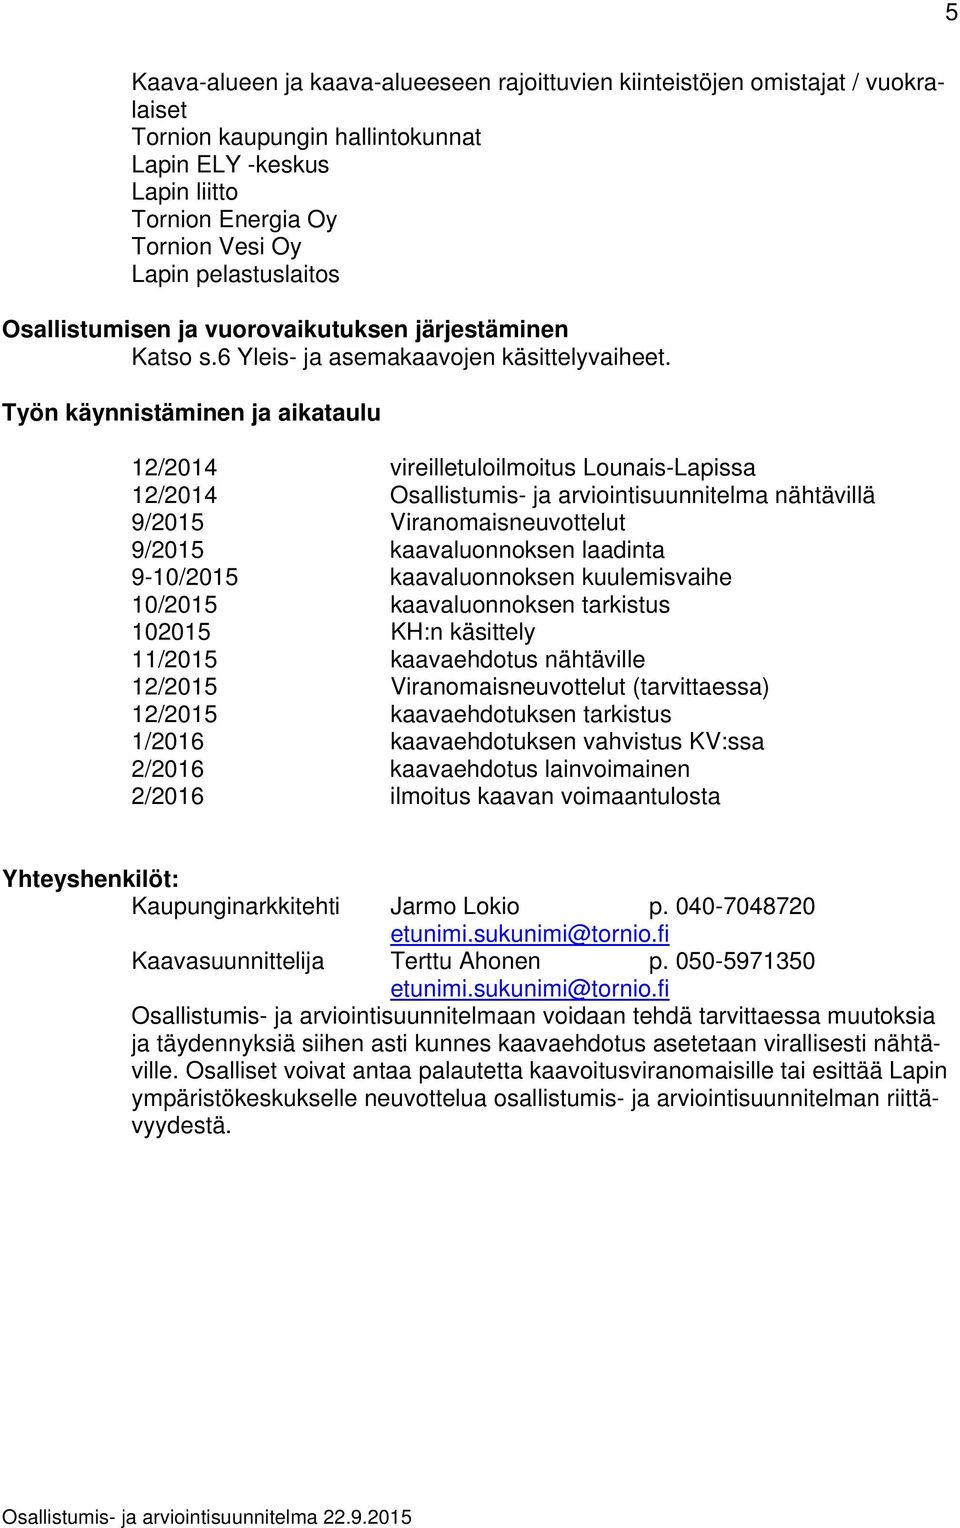 Työn käynnistäminen ja aikataulu 12/2014 vireilletuloilmoitus Lounais-Lapissa 12/2014 Osallistumis- ja arviointisuunnitelma nähtävillä 9/2015 Viranomaisneuvottelut 9/2015 kaavaluonnoksen laadinta